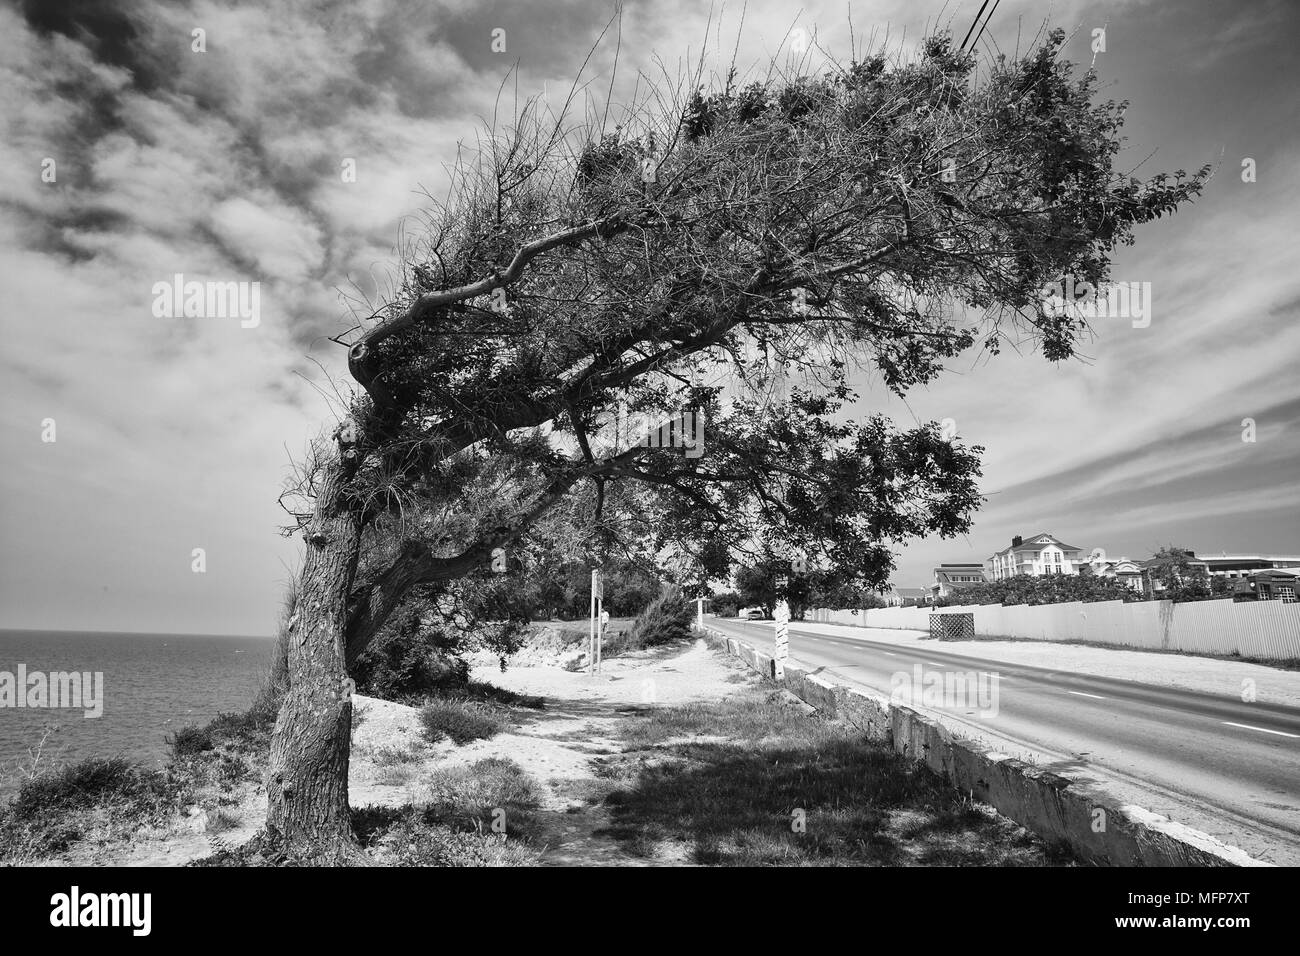 Imagen en blanco y negro de un árbol en la orilla del mar, curvadas por el viento, con las nubes de fondo agradable Foto de stock